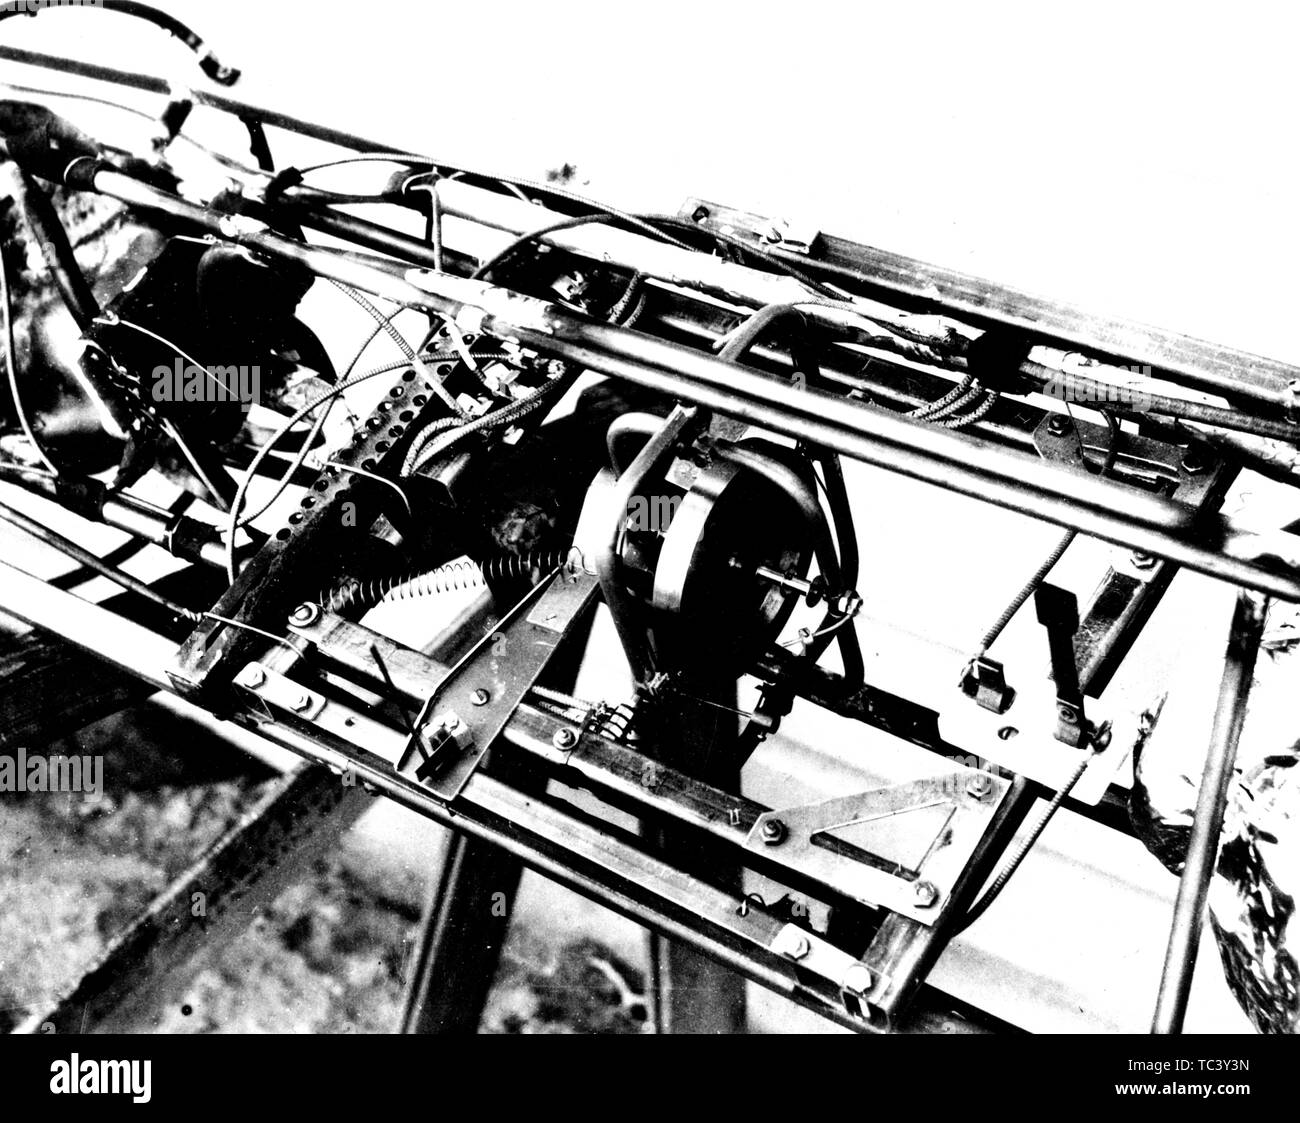 Cerca del Dr. Robert H. Goddard giroscopio y piezas asociadas utilizadas en la estabilización del cohete, 19 de abril de 1932. Imagen cortesía de la Administración Nacional de Aeronáutica y del Espacio (NASA). () Foto de stock